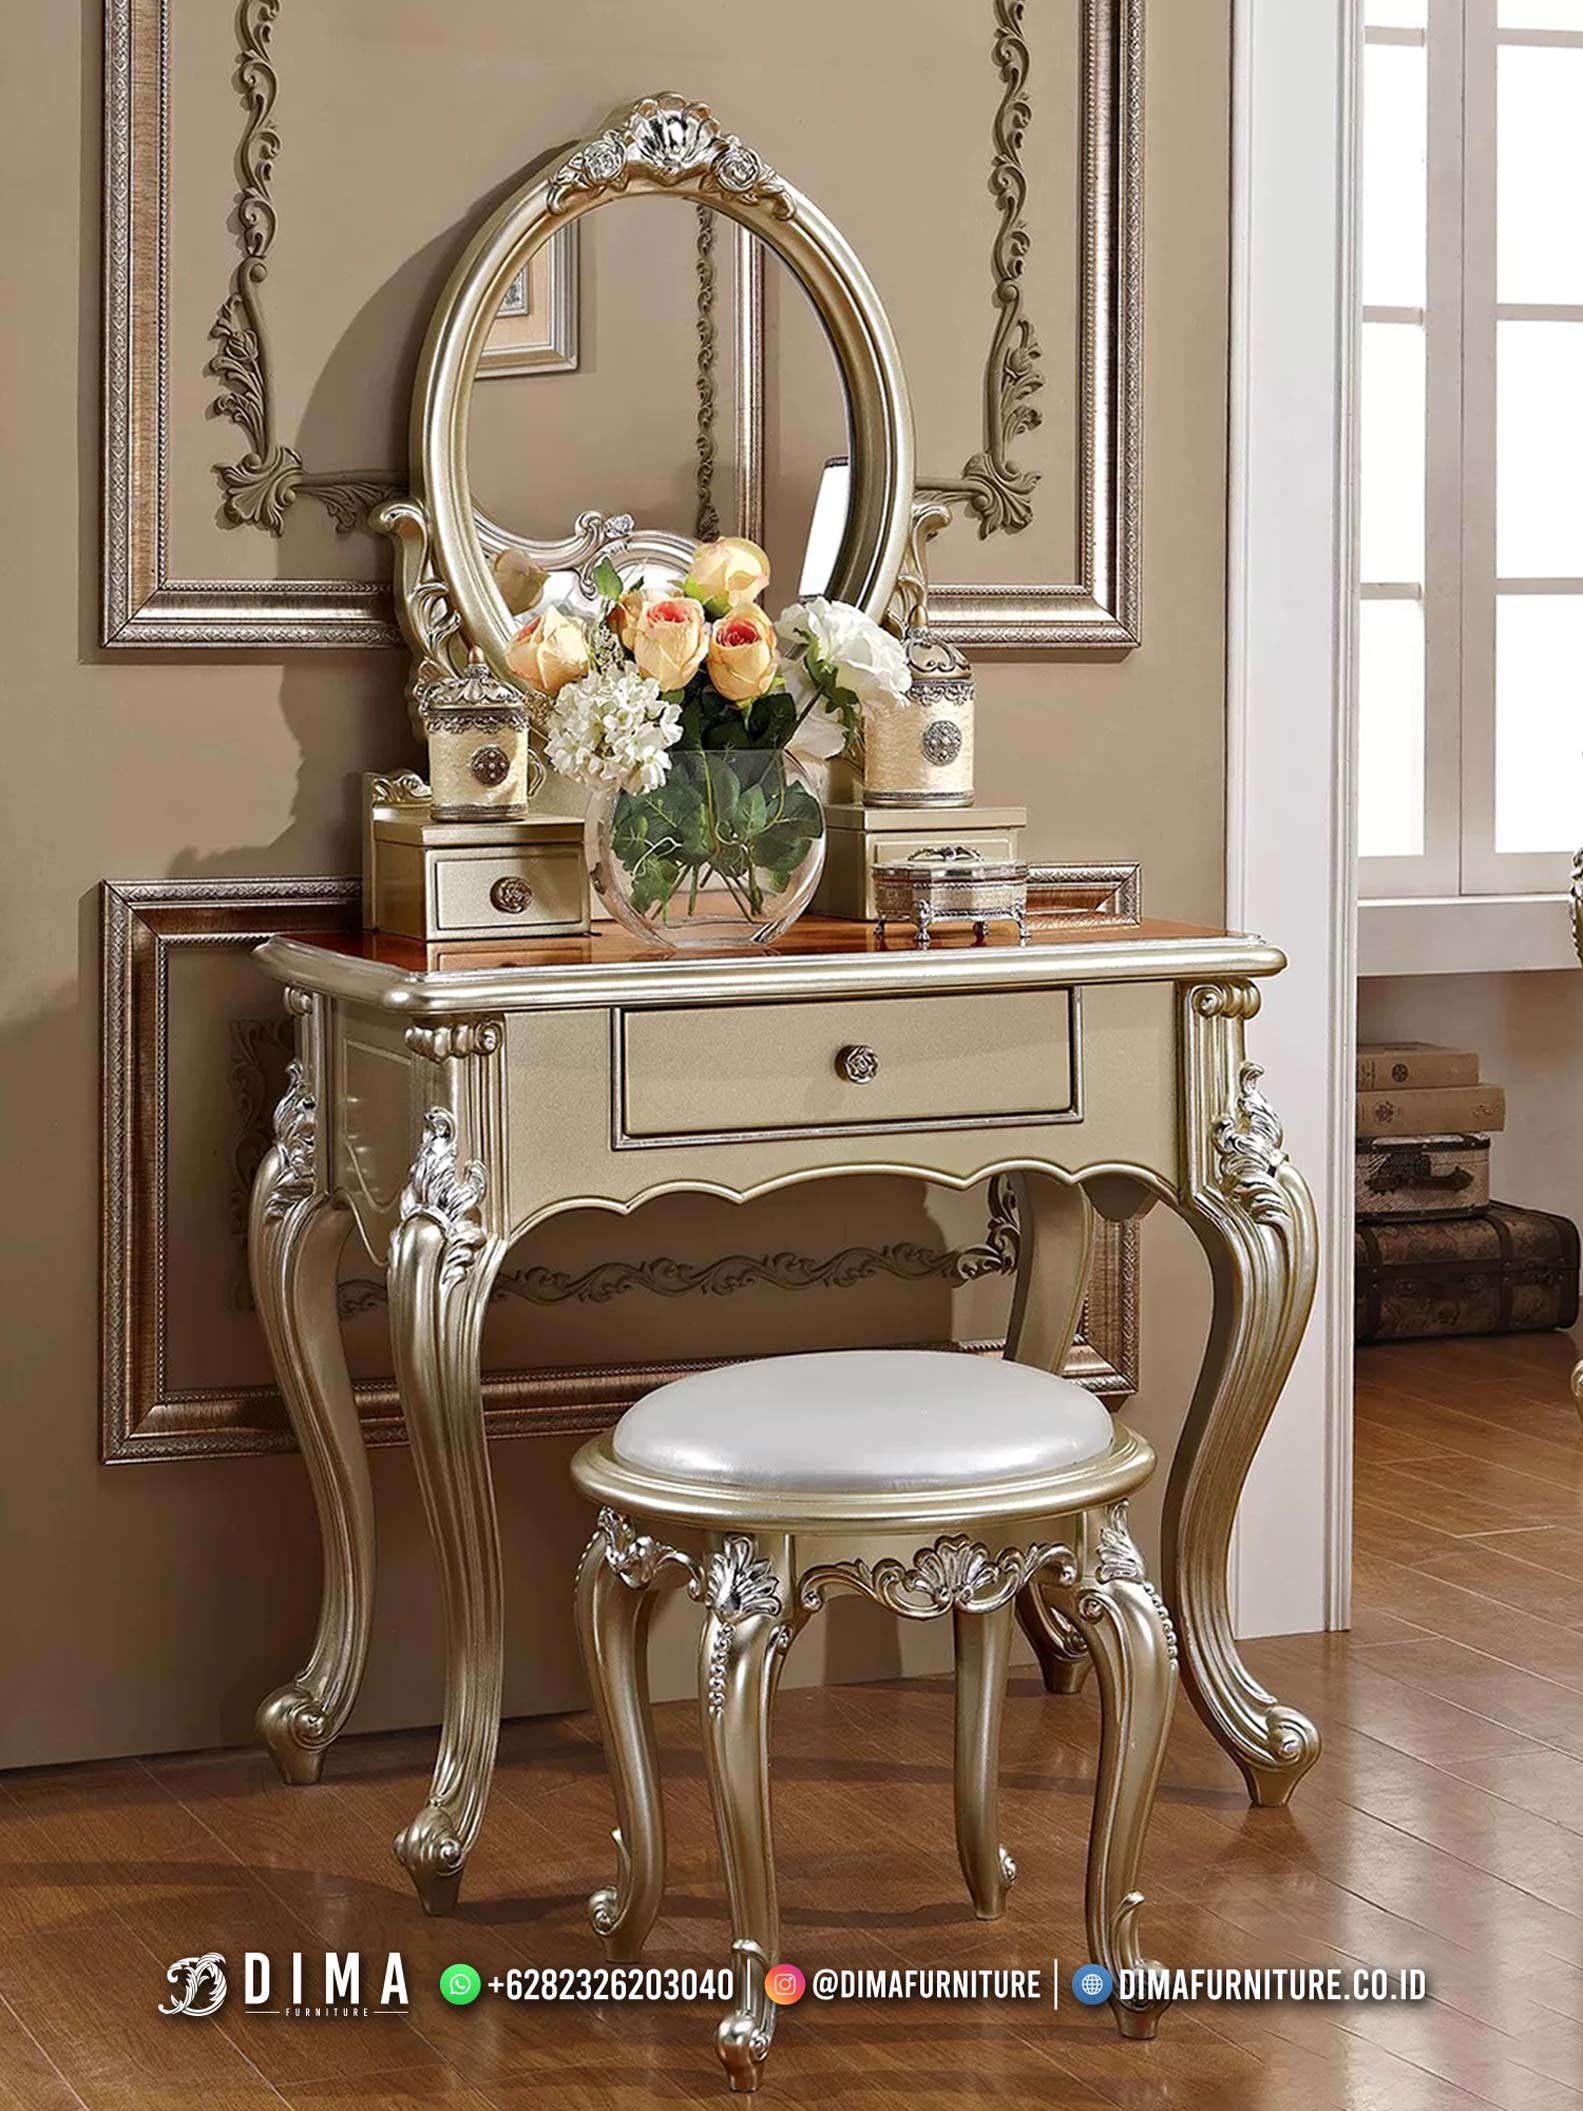 Furniture Meja Rias Terbaru Untuk Ruang Kamar Klasik Desain TTJ-2492